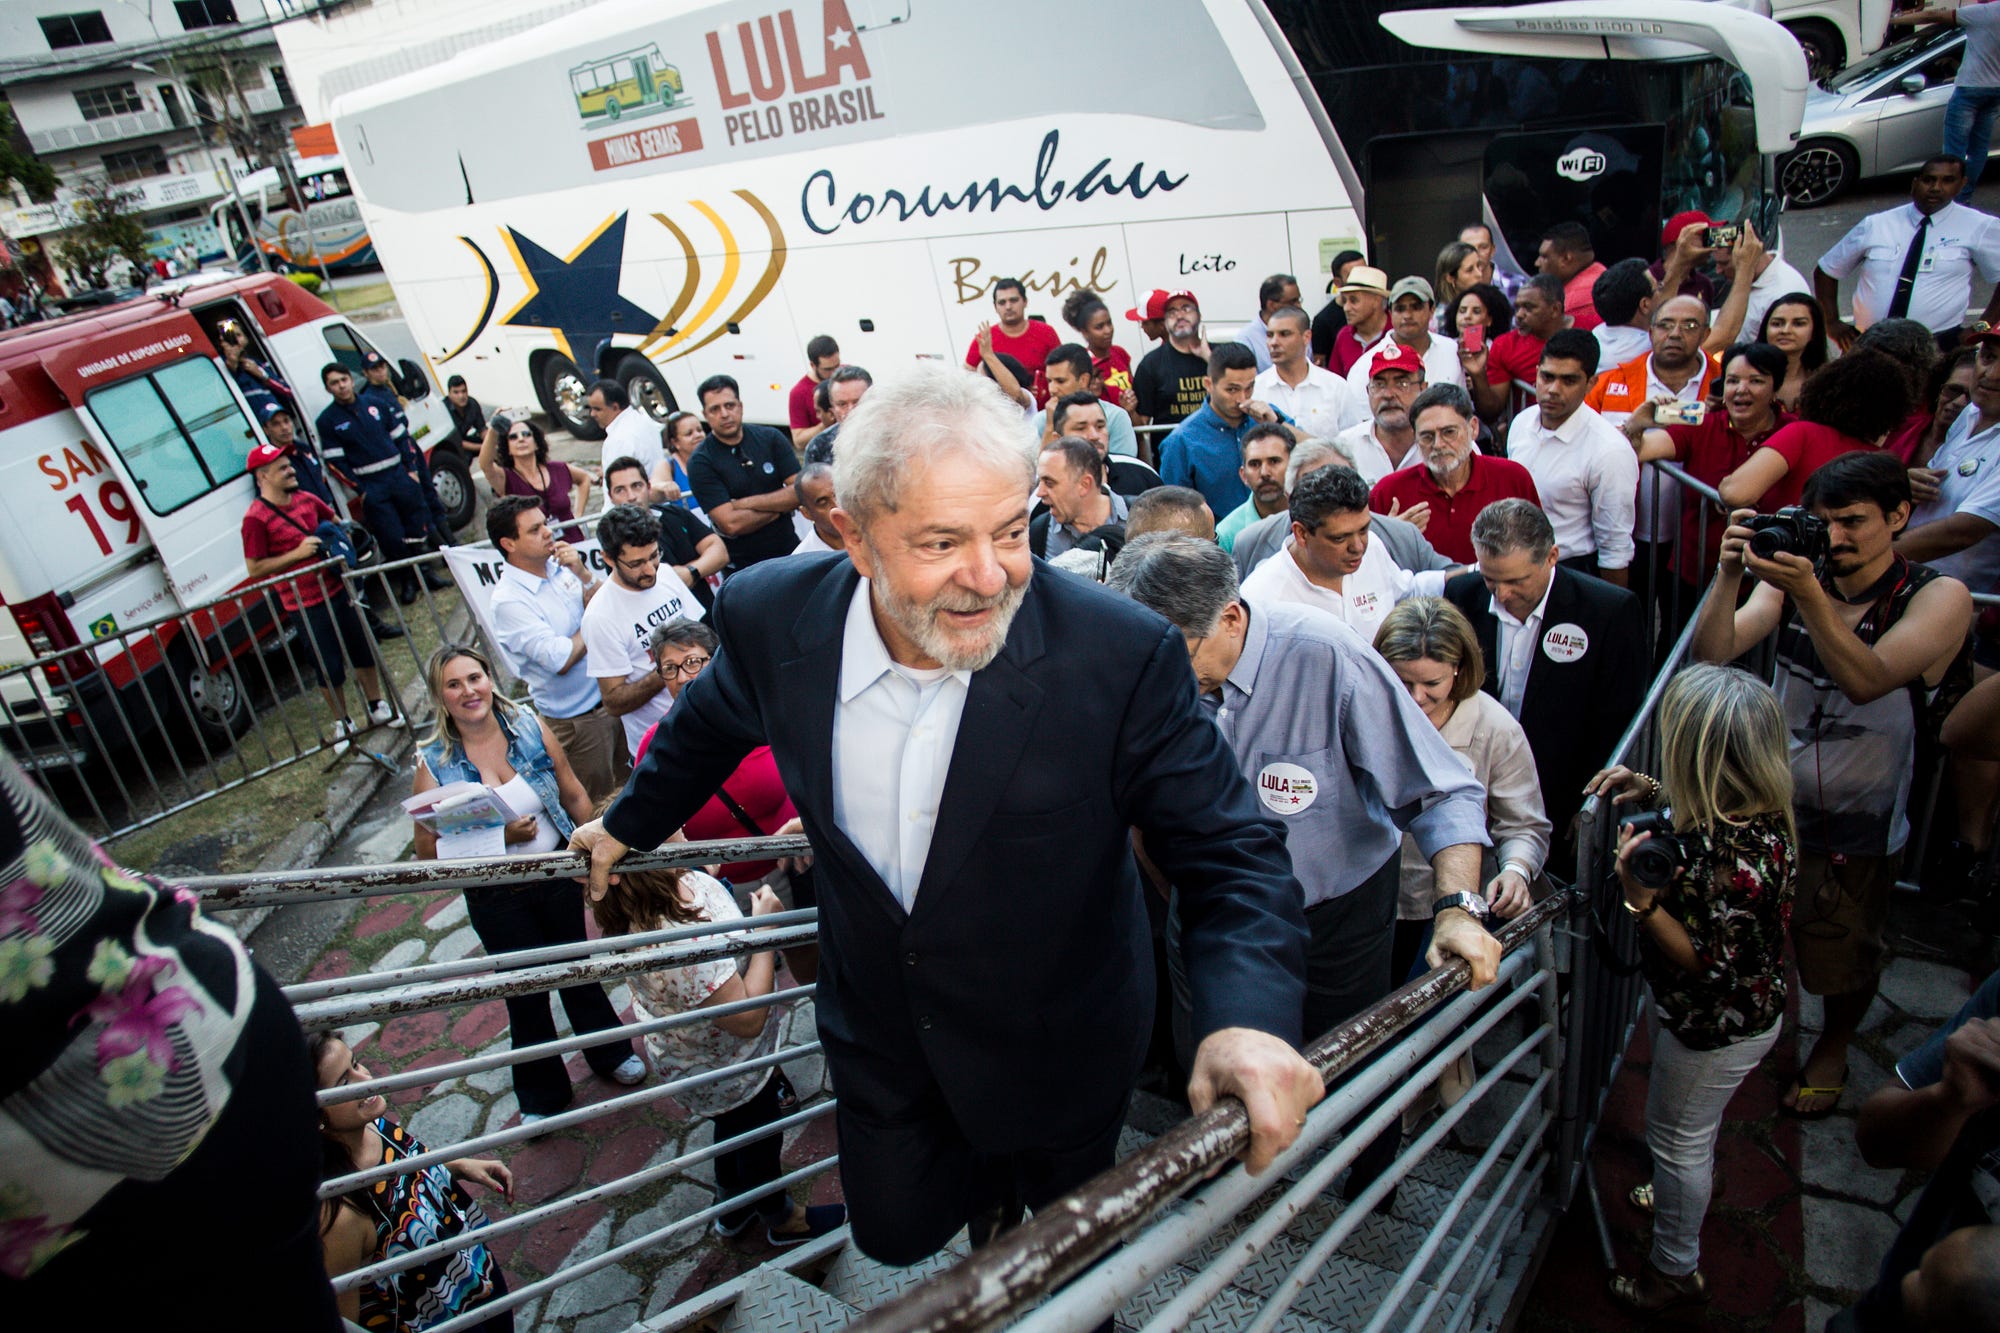 ¡Lula en la ruta de nuevo! | Informe especial (fotos+textos)